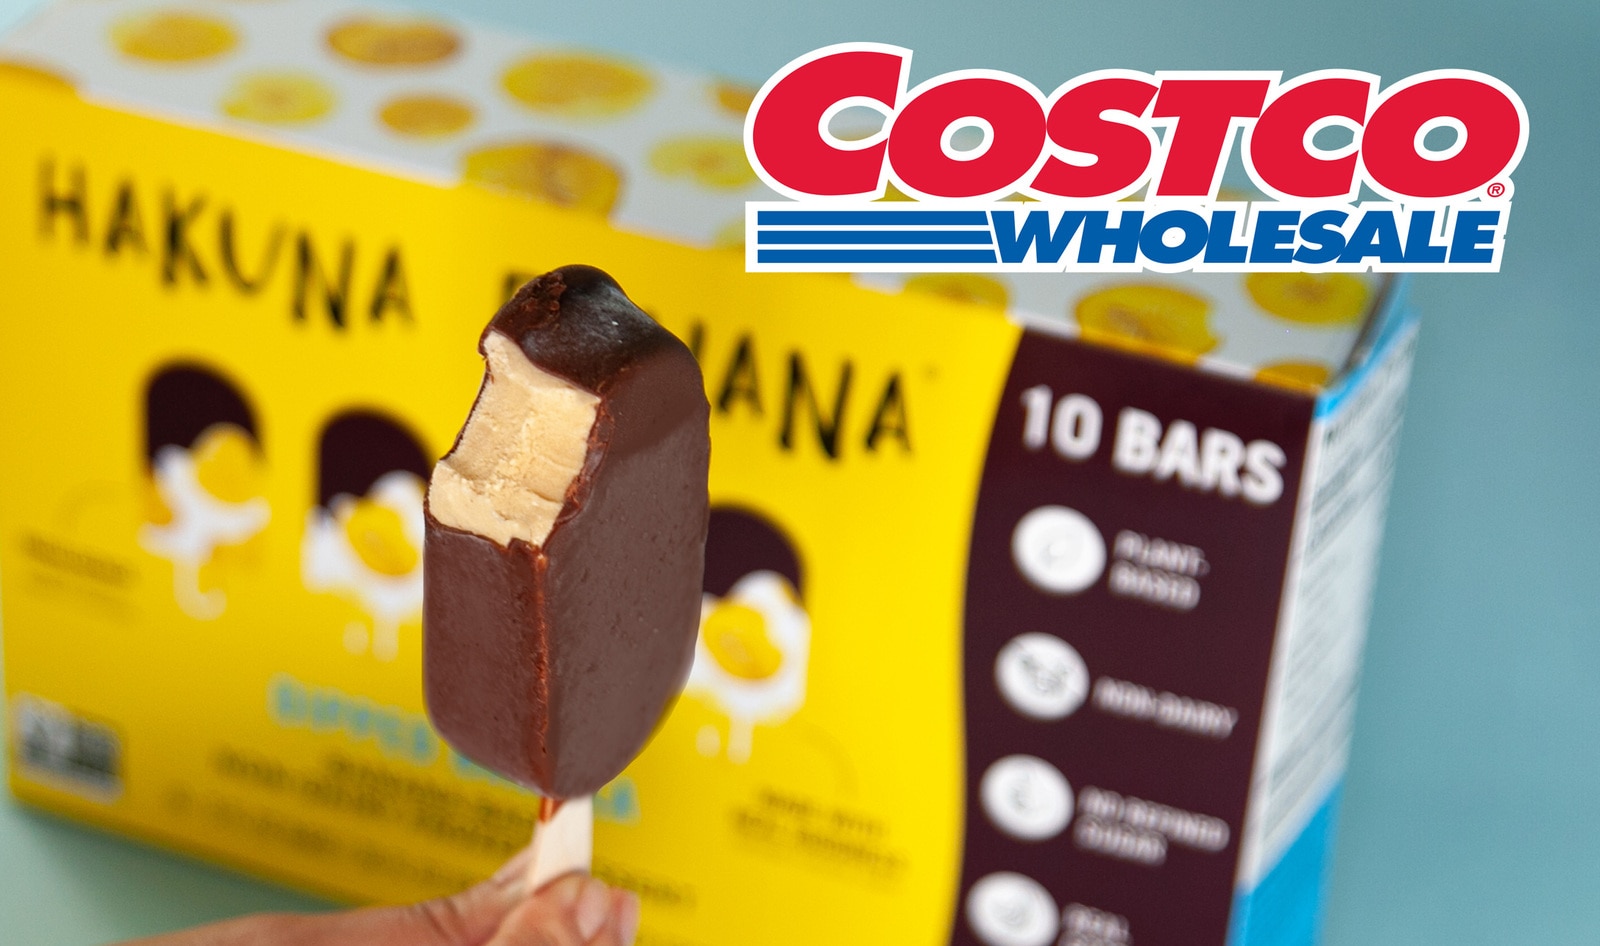 Vegan Chocolate-Dipped Banana Ice Cream Bars Launch at Costco